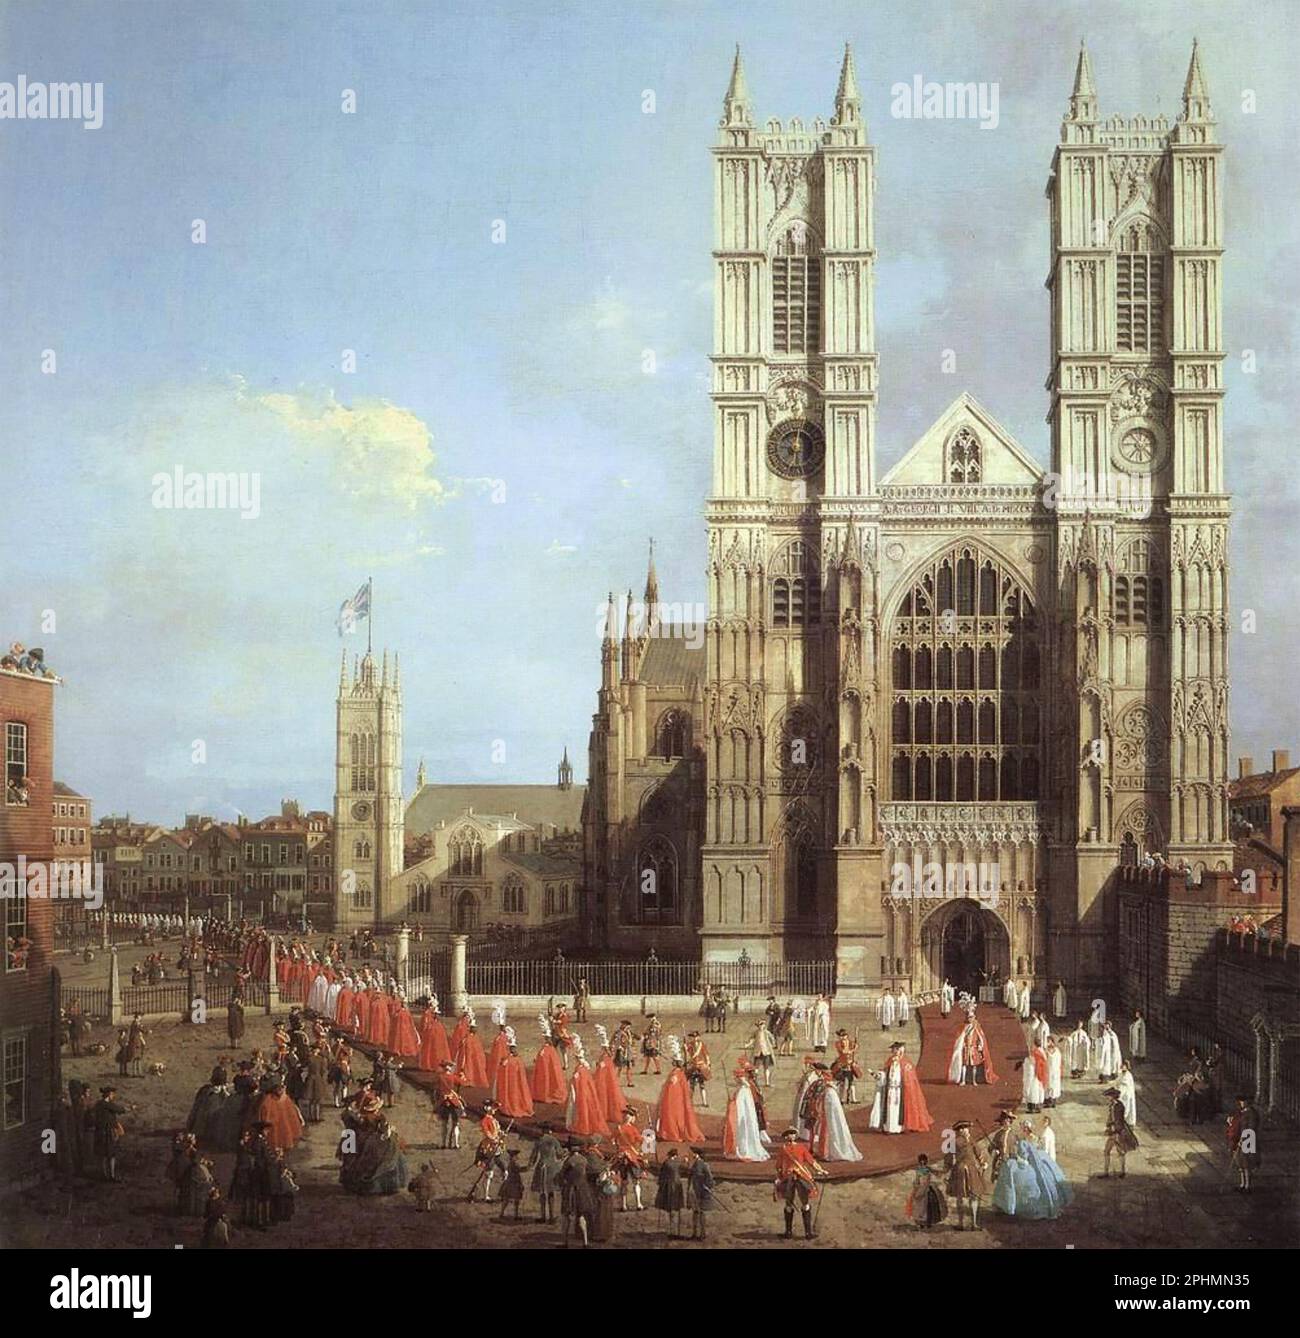 ABBAZIA DI WESTMINSTER, Londra, dipinta dall'artista italiano Canaletto che mostra i nuovi membri dell'Ordine del bagno in processione dalle Case del Parlamento il 26 giugno 1749 Foto Stock